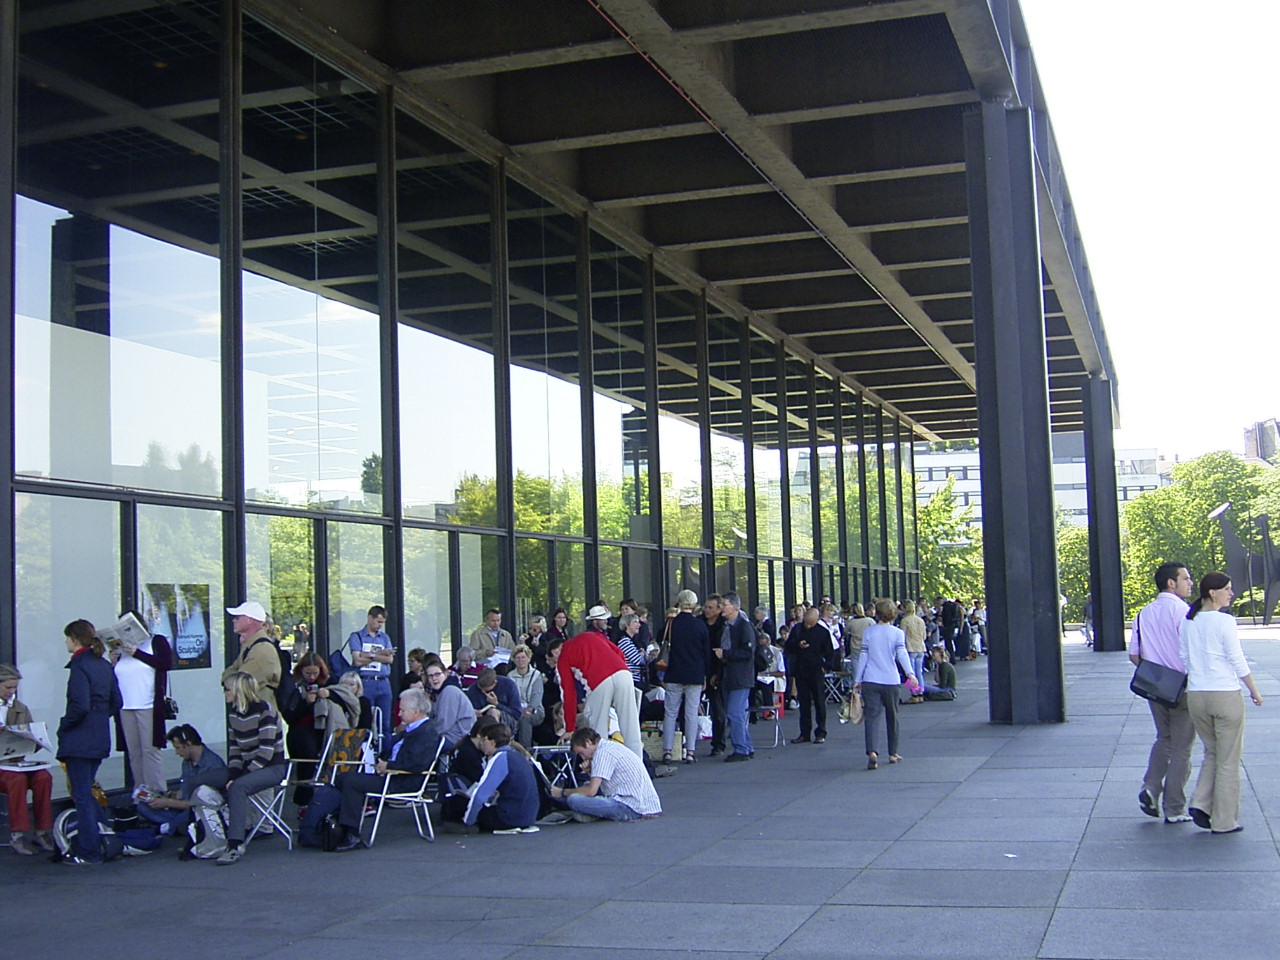 File:MoMa Ausstellung in Berlin RIMG0457.JPG Wikimedia